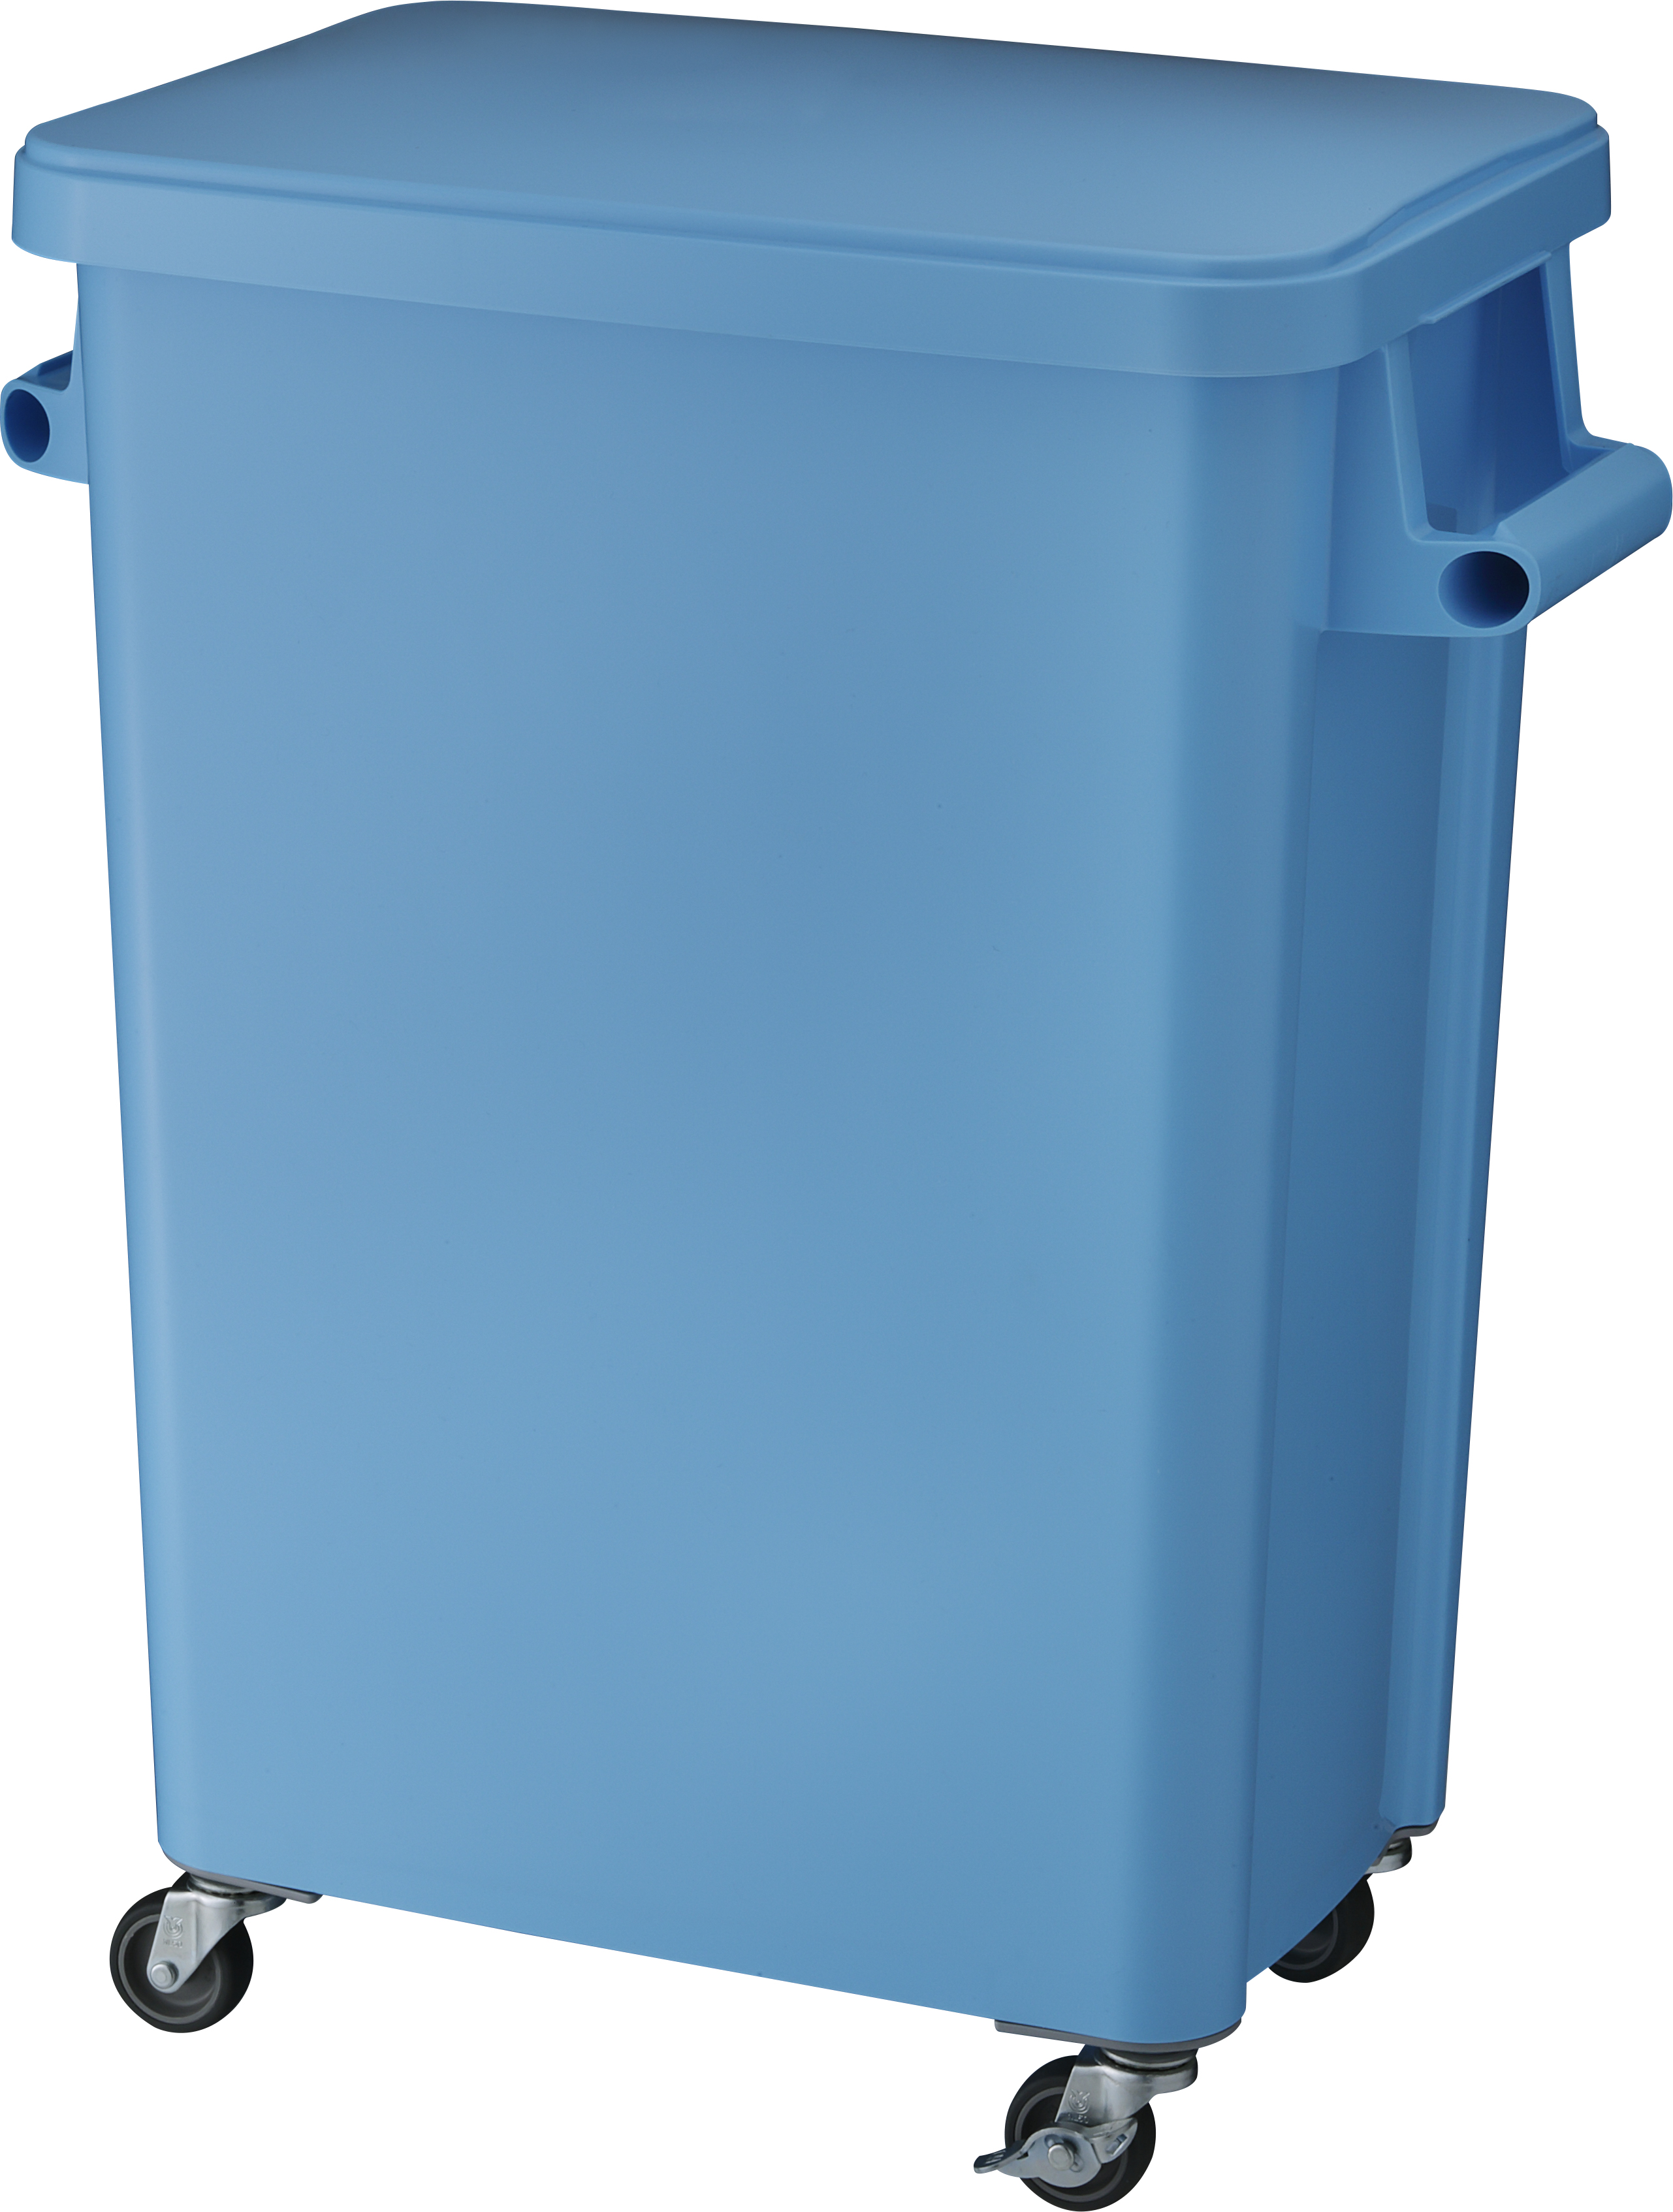 どこで 買える リス 厨房用キャスターペール70L 排水栓付 ブルー GGYK006 リス(株) ゴミ箱、ダストボックス 